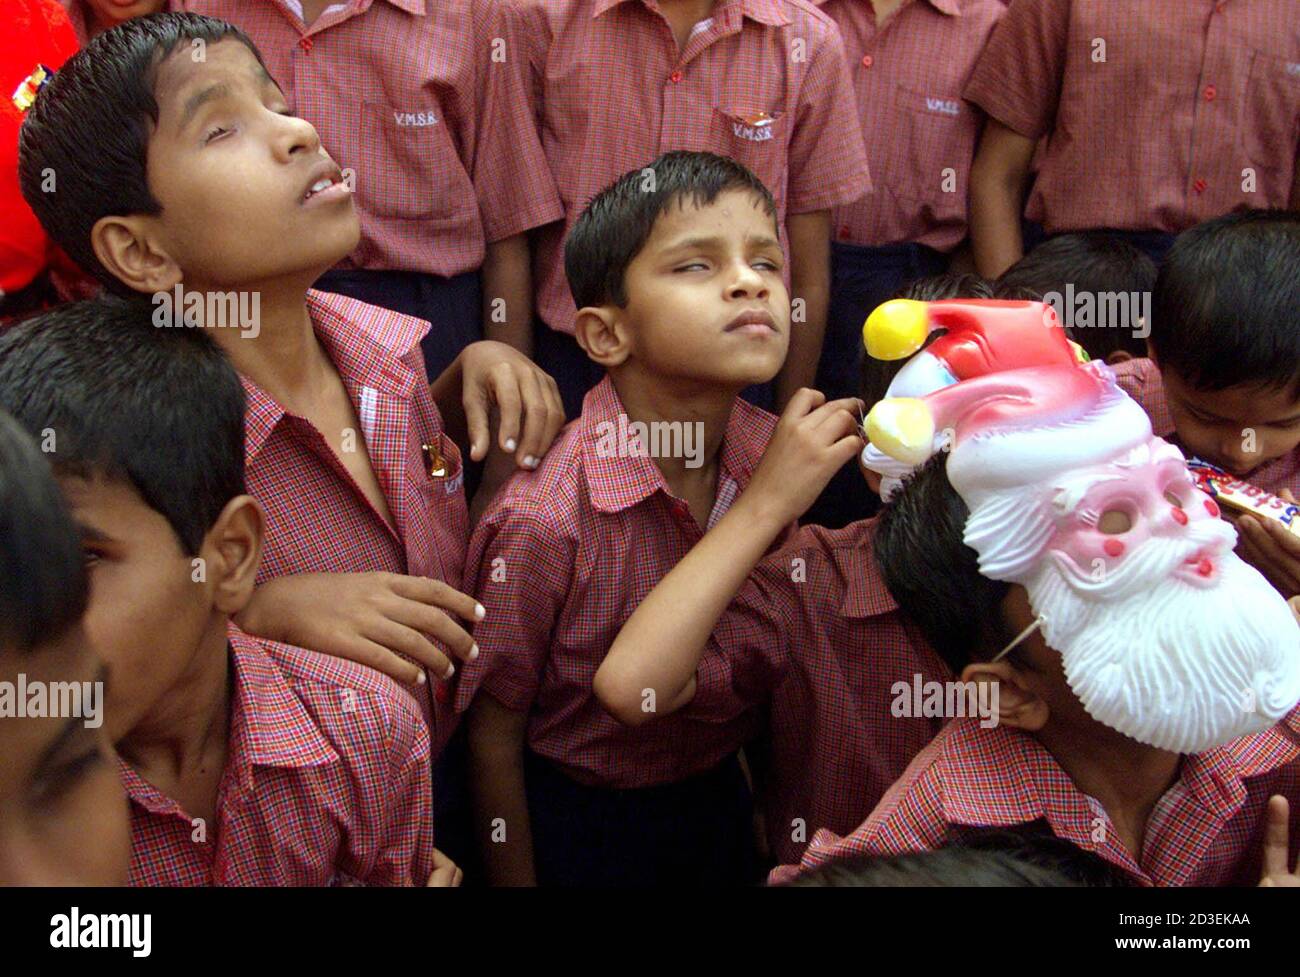 Bombay Blind Stockfotos und -bilder Kaufen - Alamy